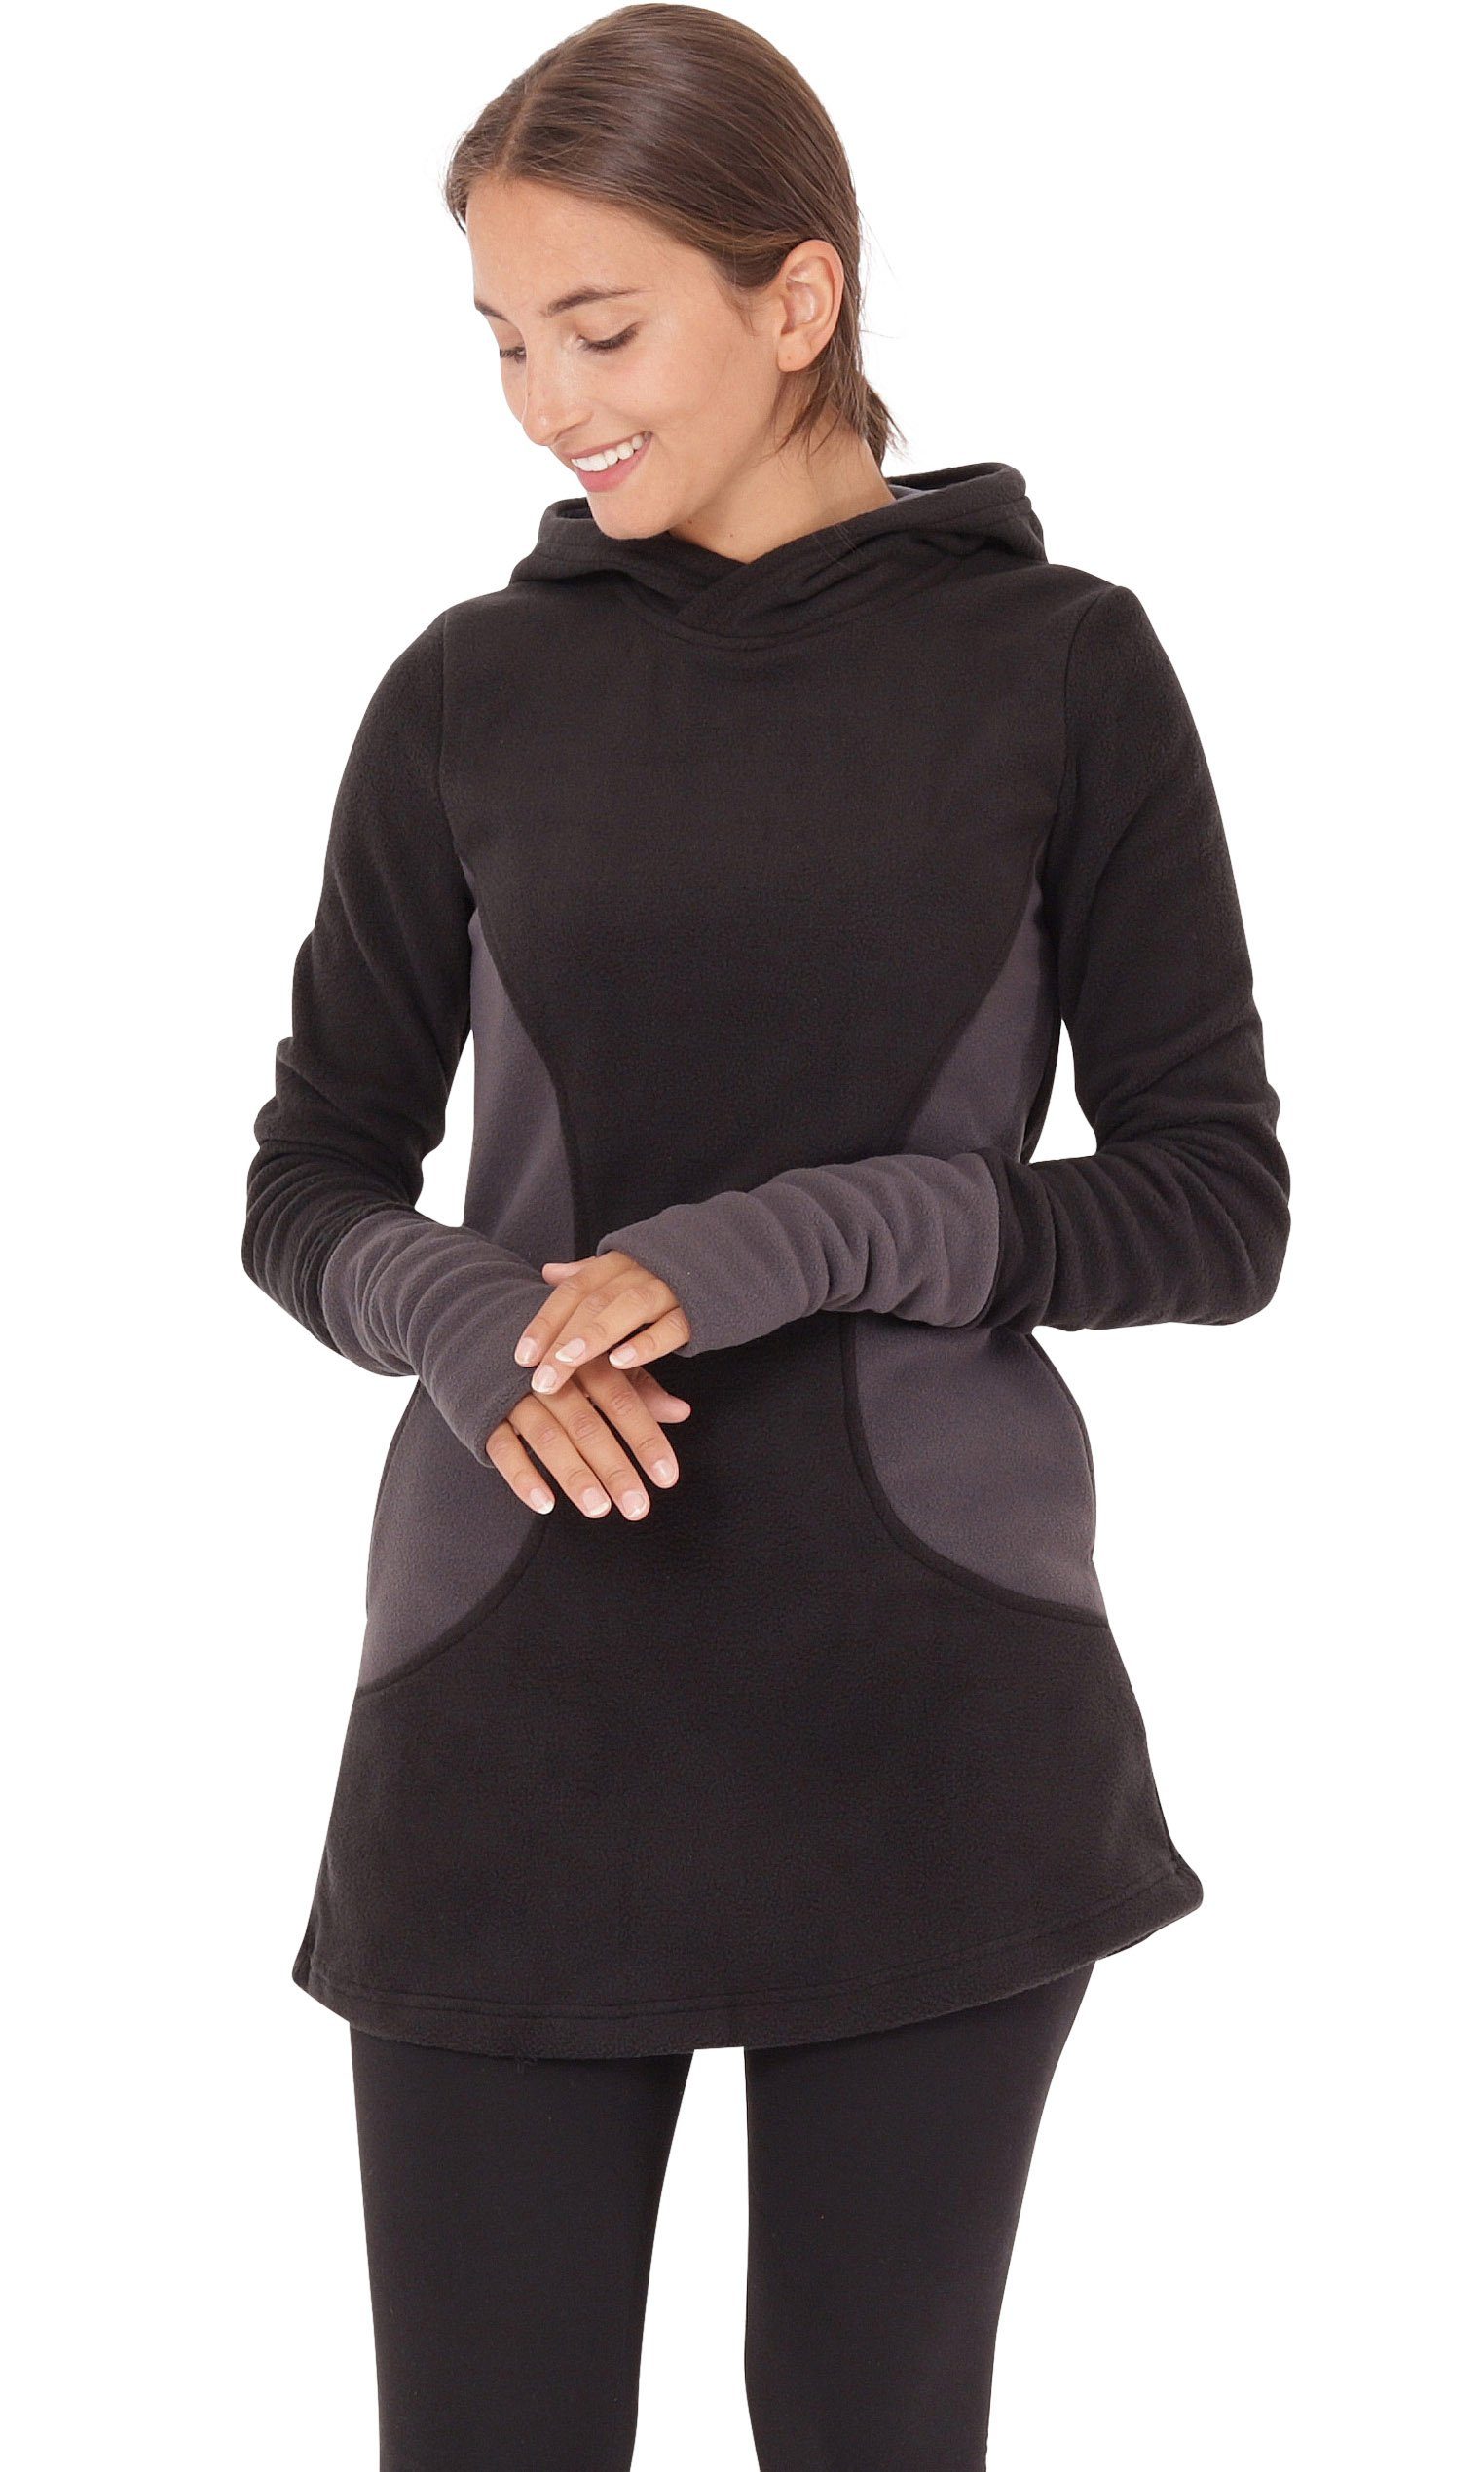 PUREWONDER Kapuzenpullover Fleece Kleid und Pullover dr12 mit Kapuze und Taschen Grau